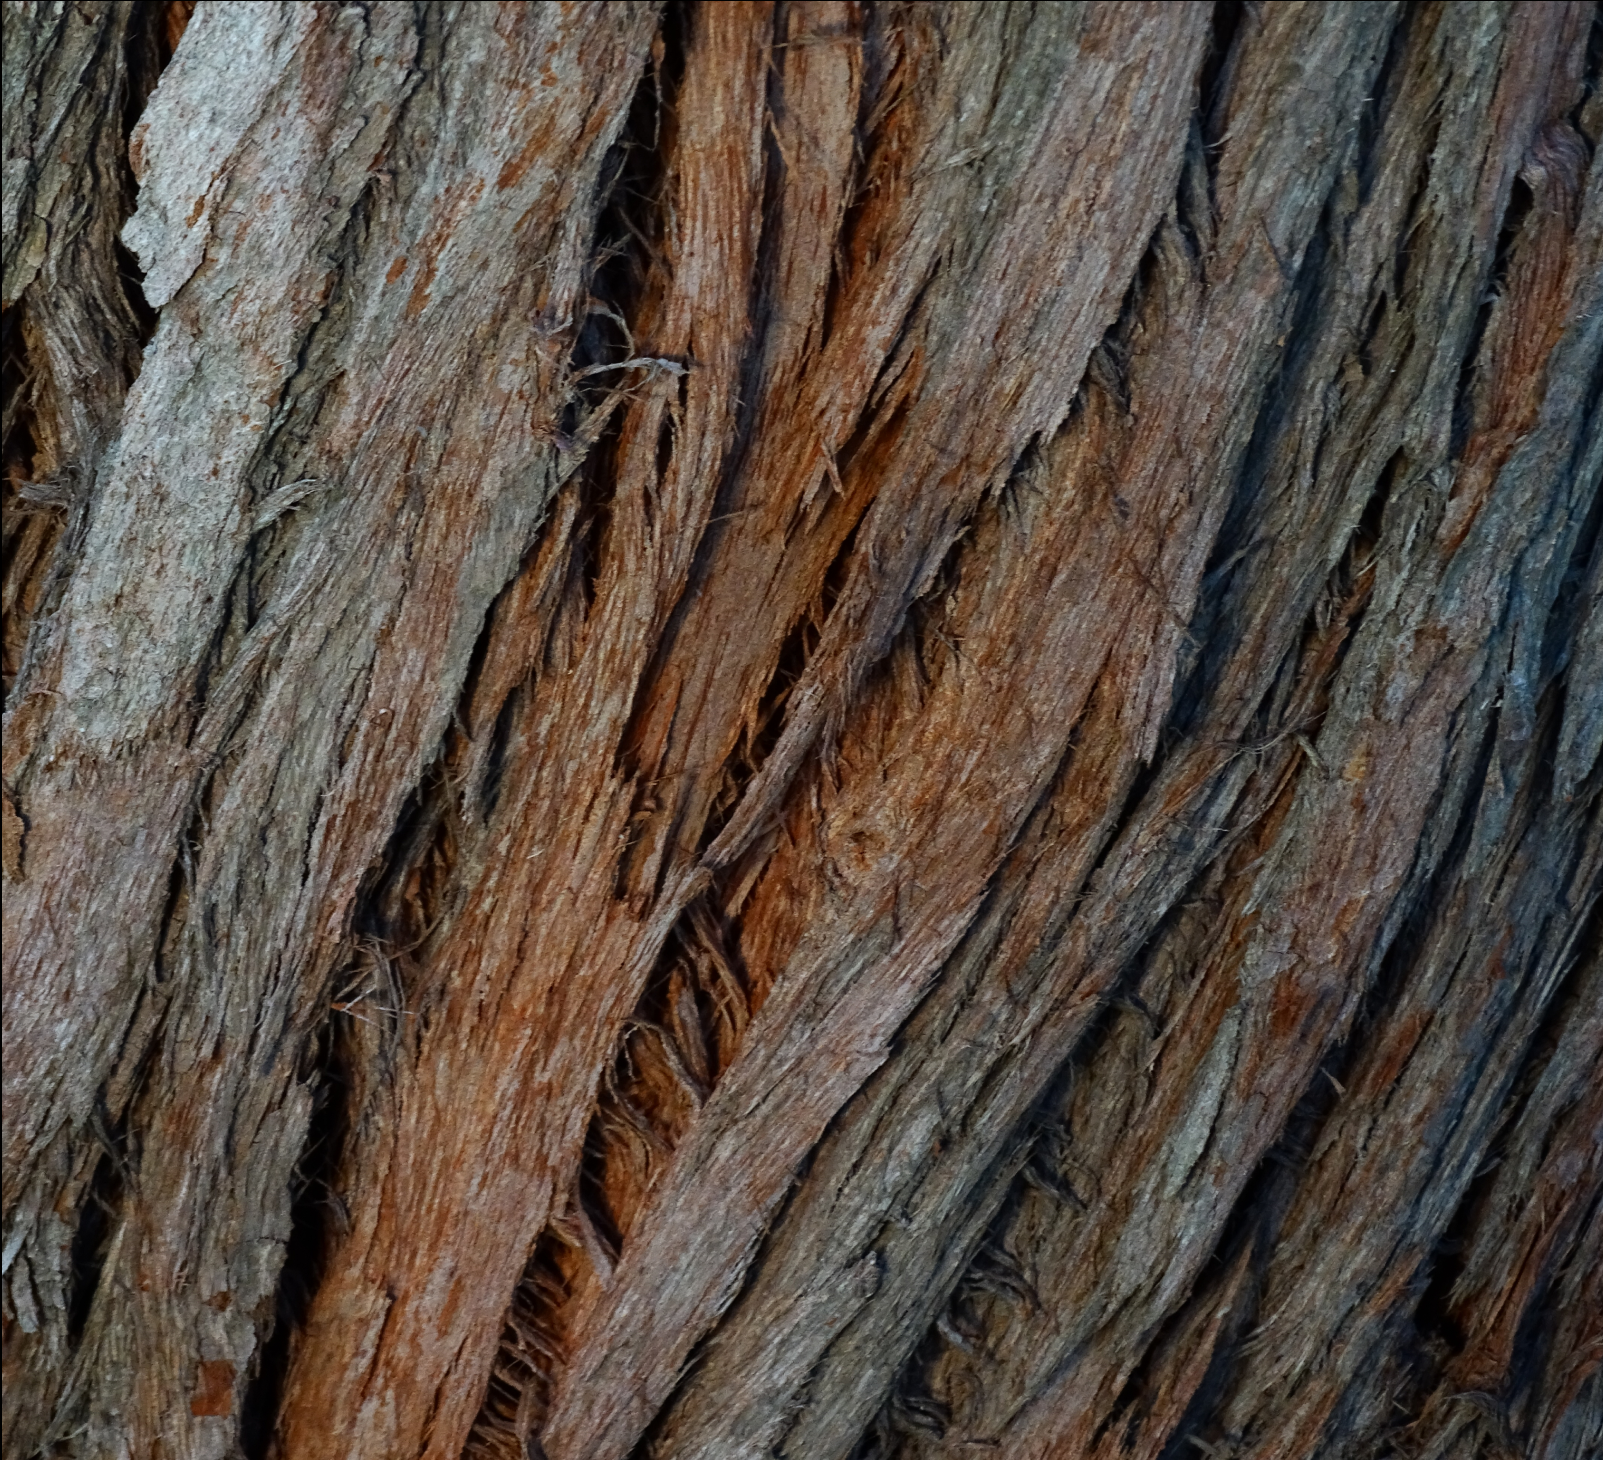 About us teaser tile tree bark